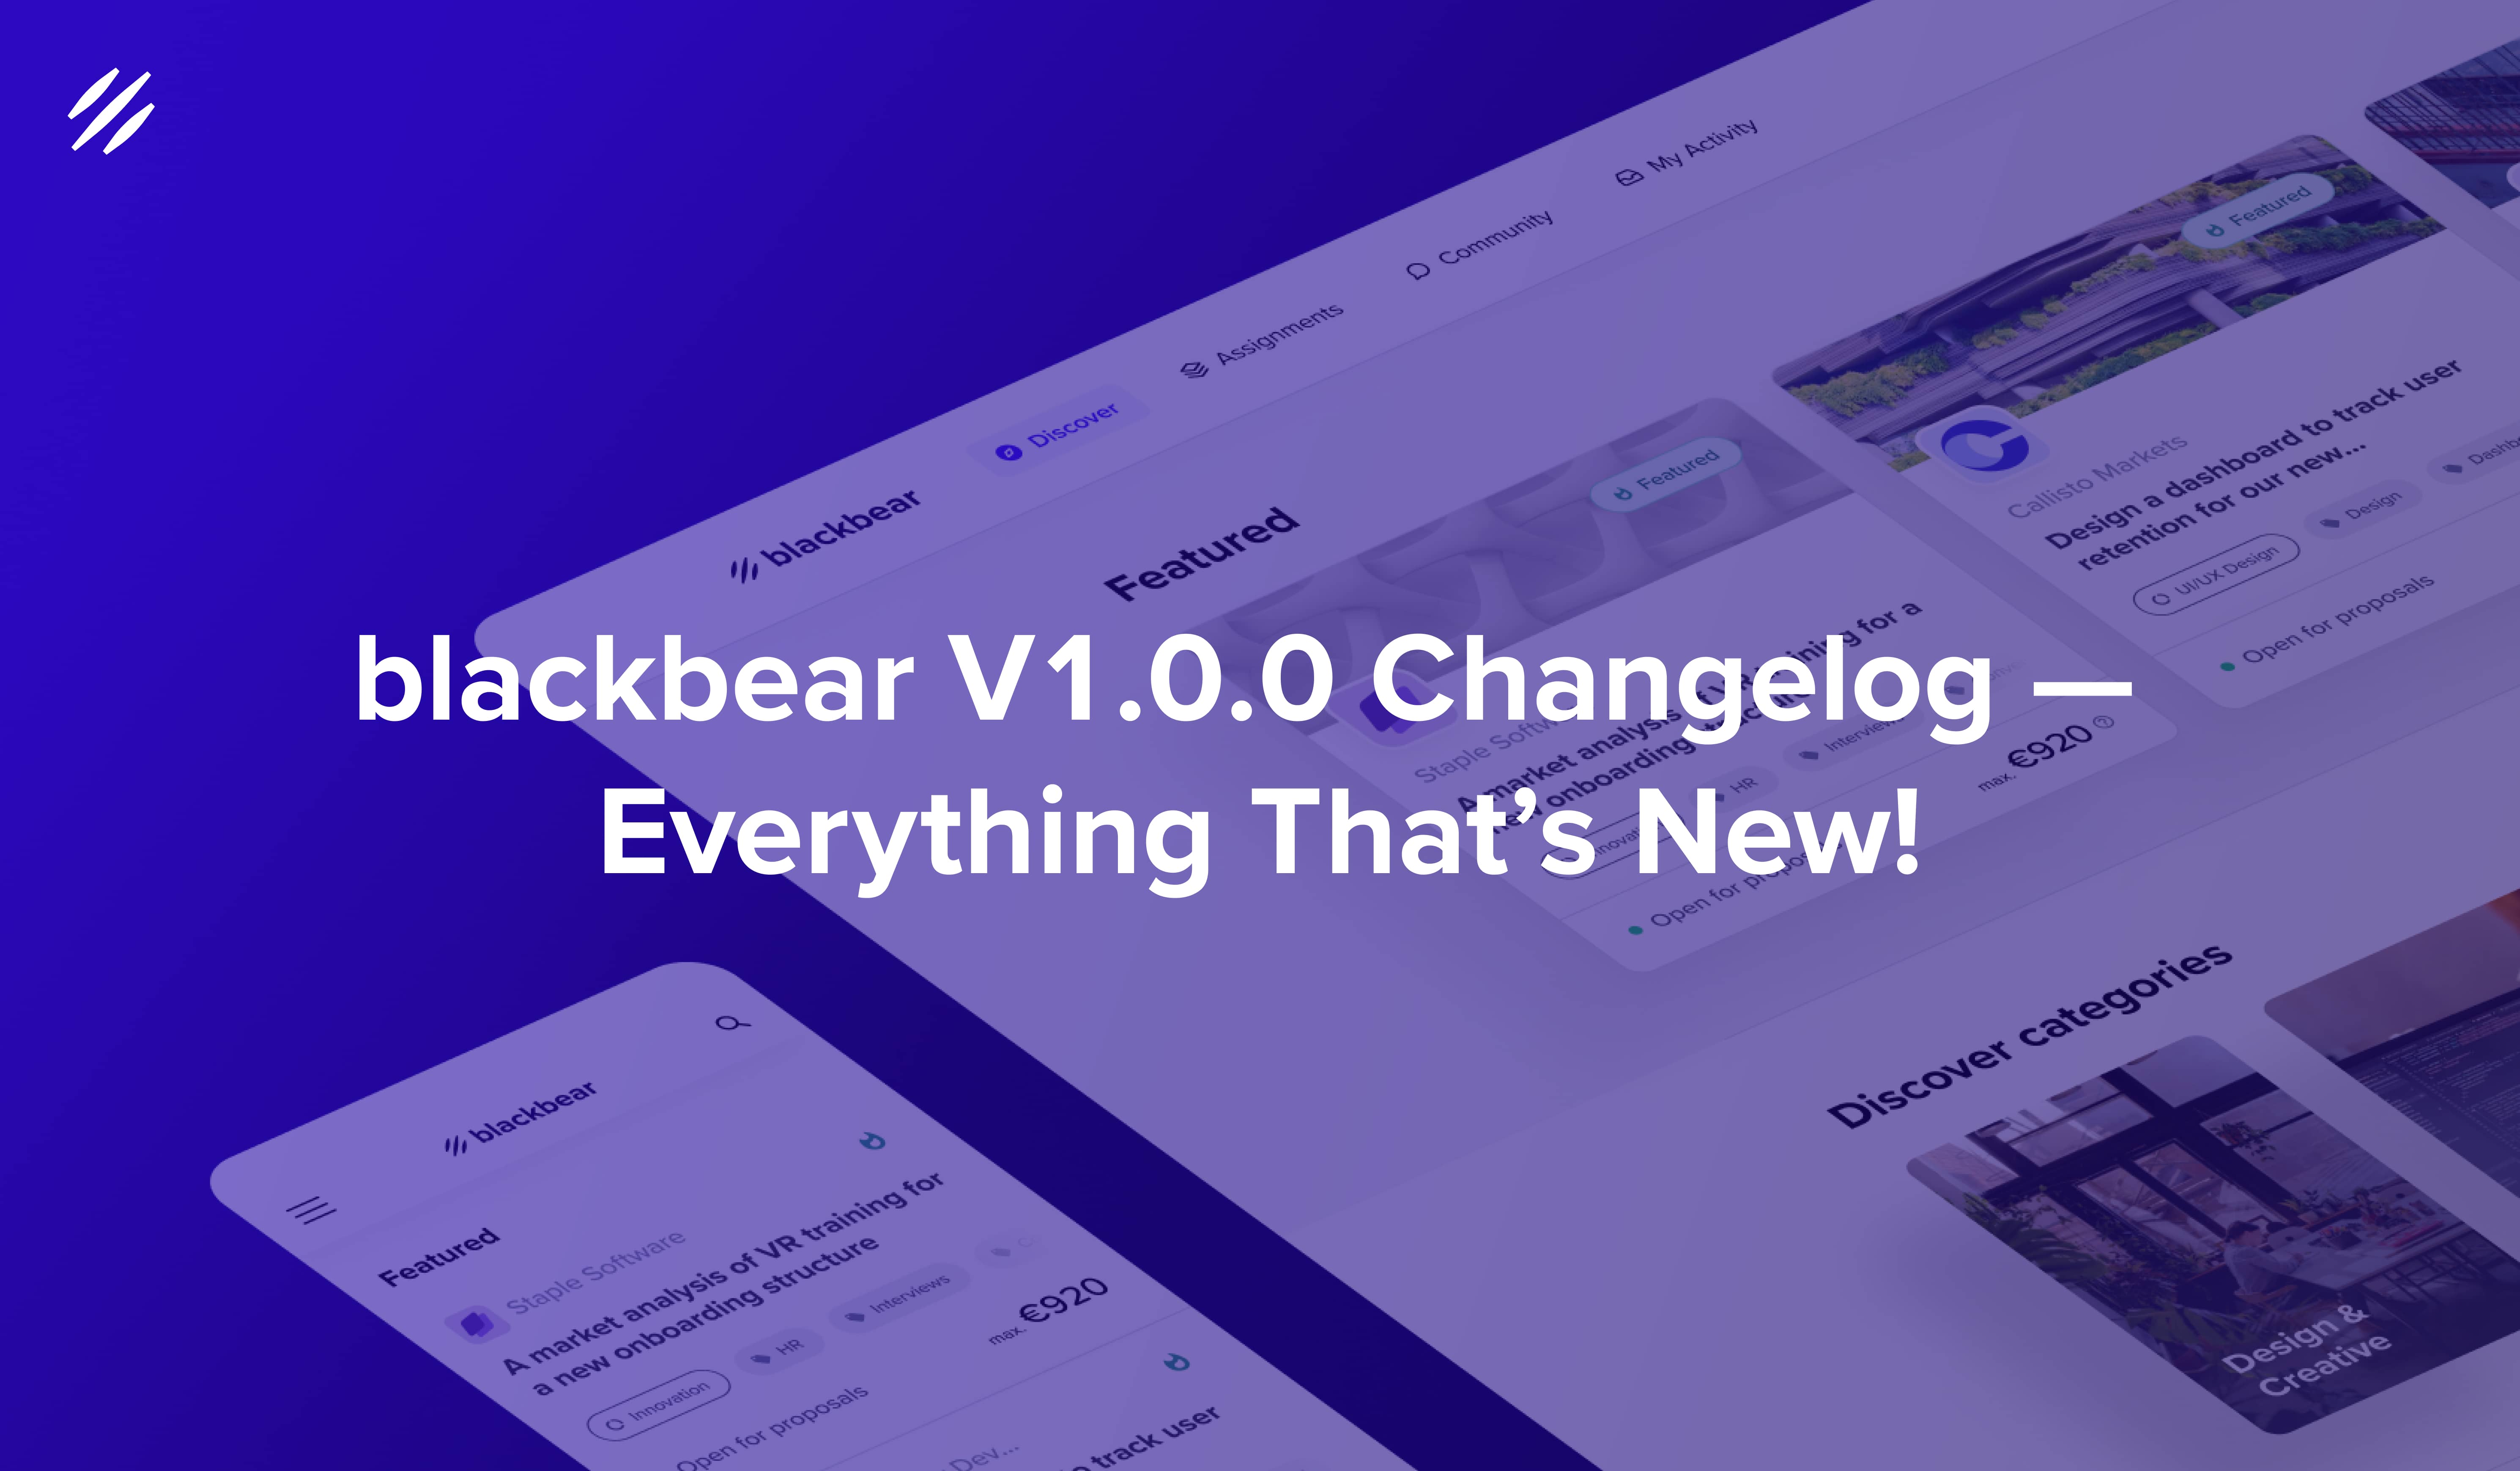 blackbear V1.0.0 Changelog — What's new?